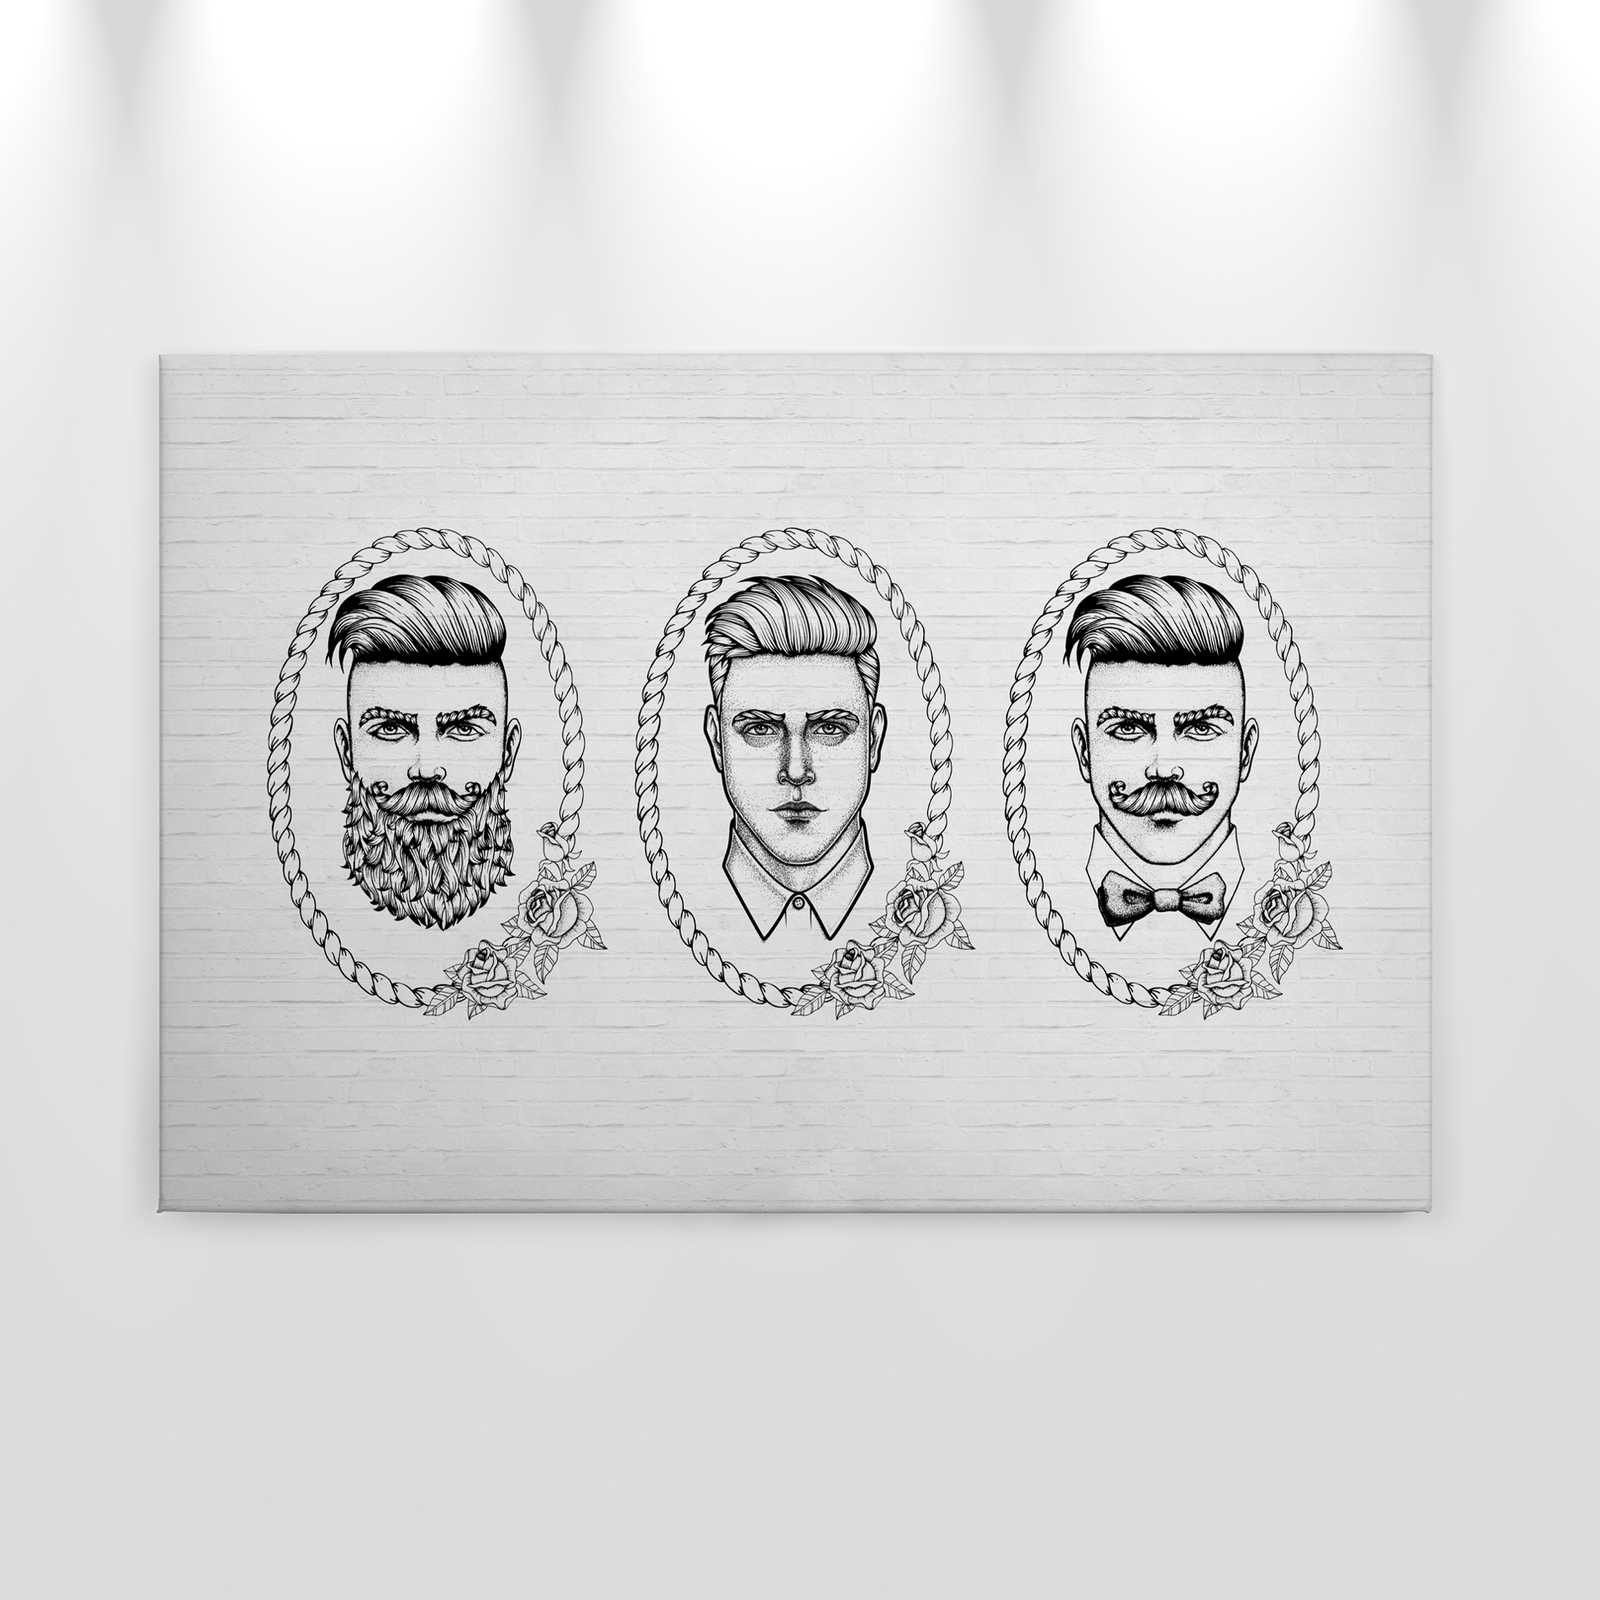             Quadro su tela in bianco e nero con ritratti di uomini in stile fumetto - 0,90 m x 0,60 m
        